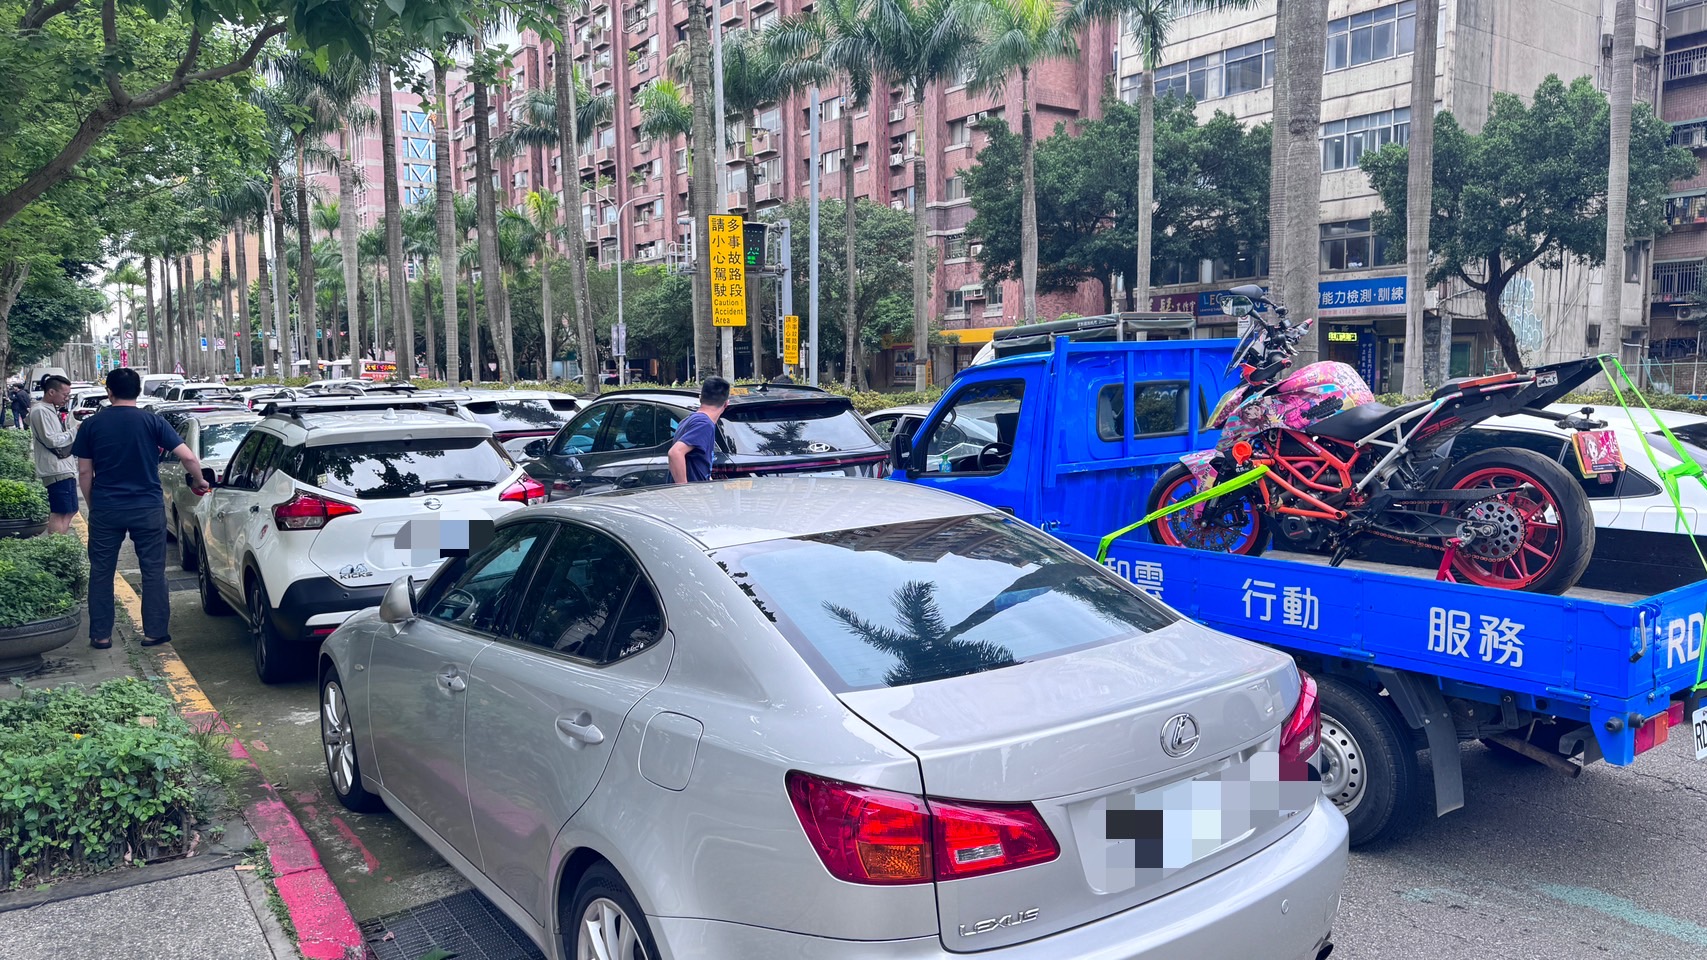 台湾机车路权促进会今号召30多辆汽车、近百人前往交通部陈抗。记者周湘芸／摄影